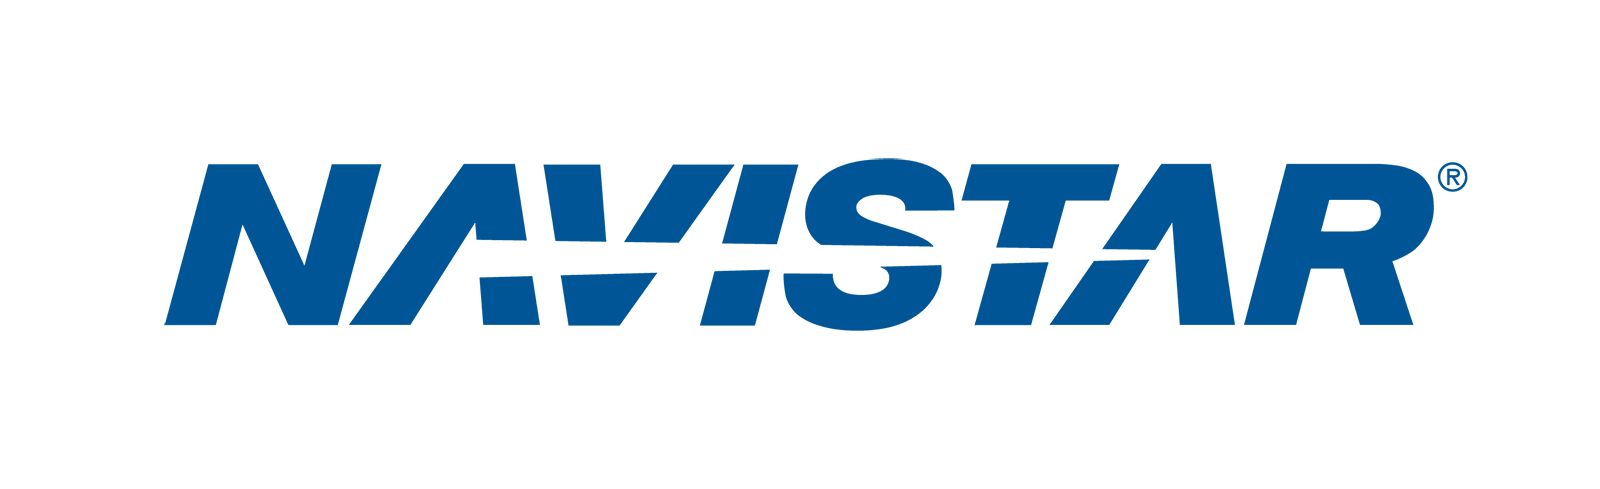 Navistar Logo_1600x489